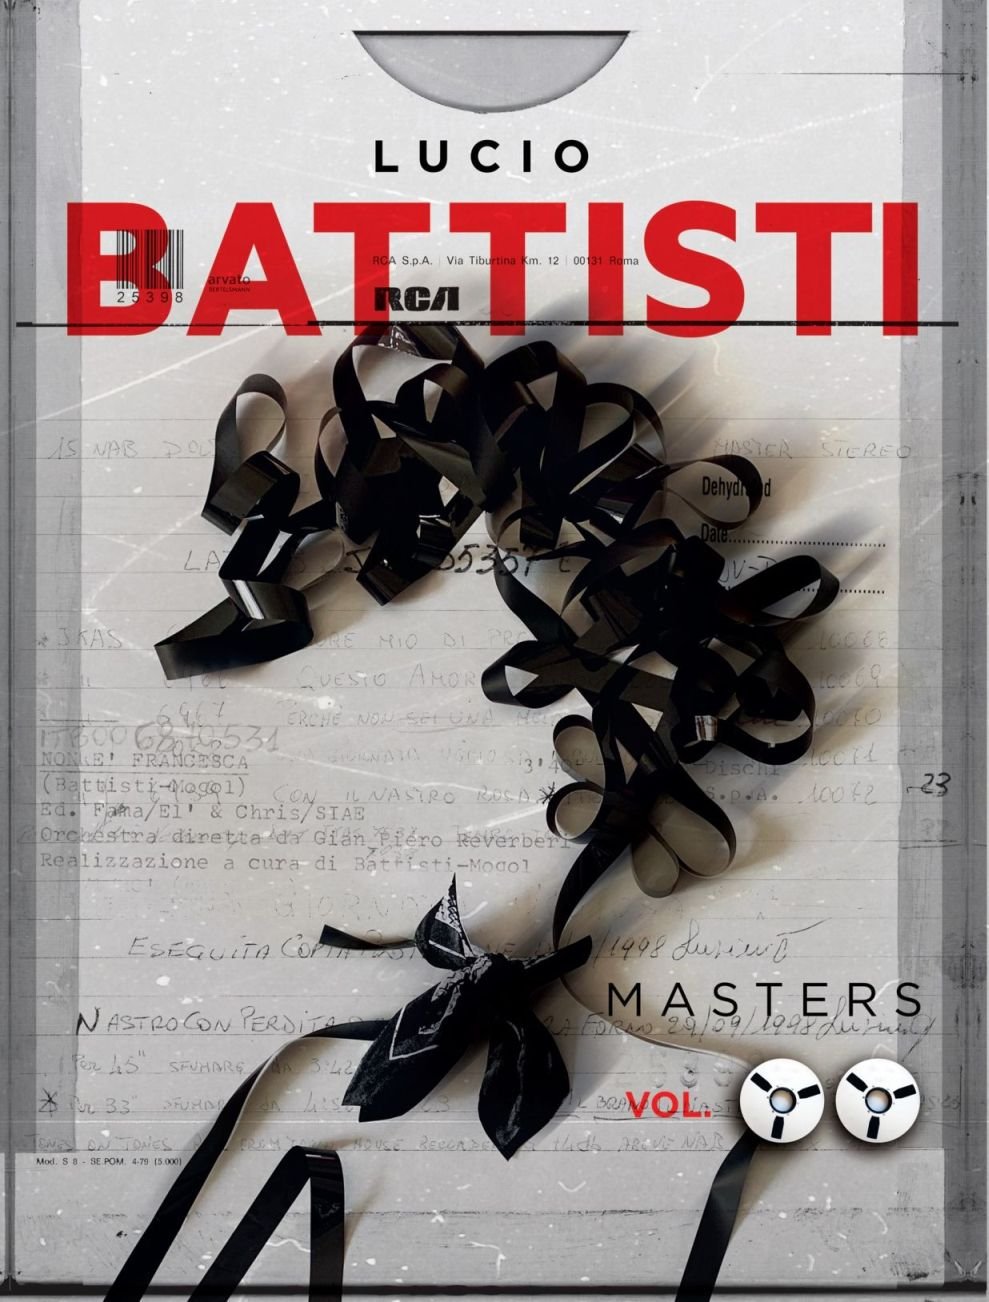 Lucio Battisti: il 6 settembre esce “Masters – Vol. 2”